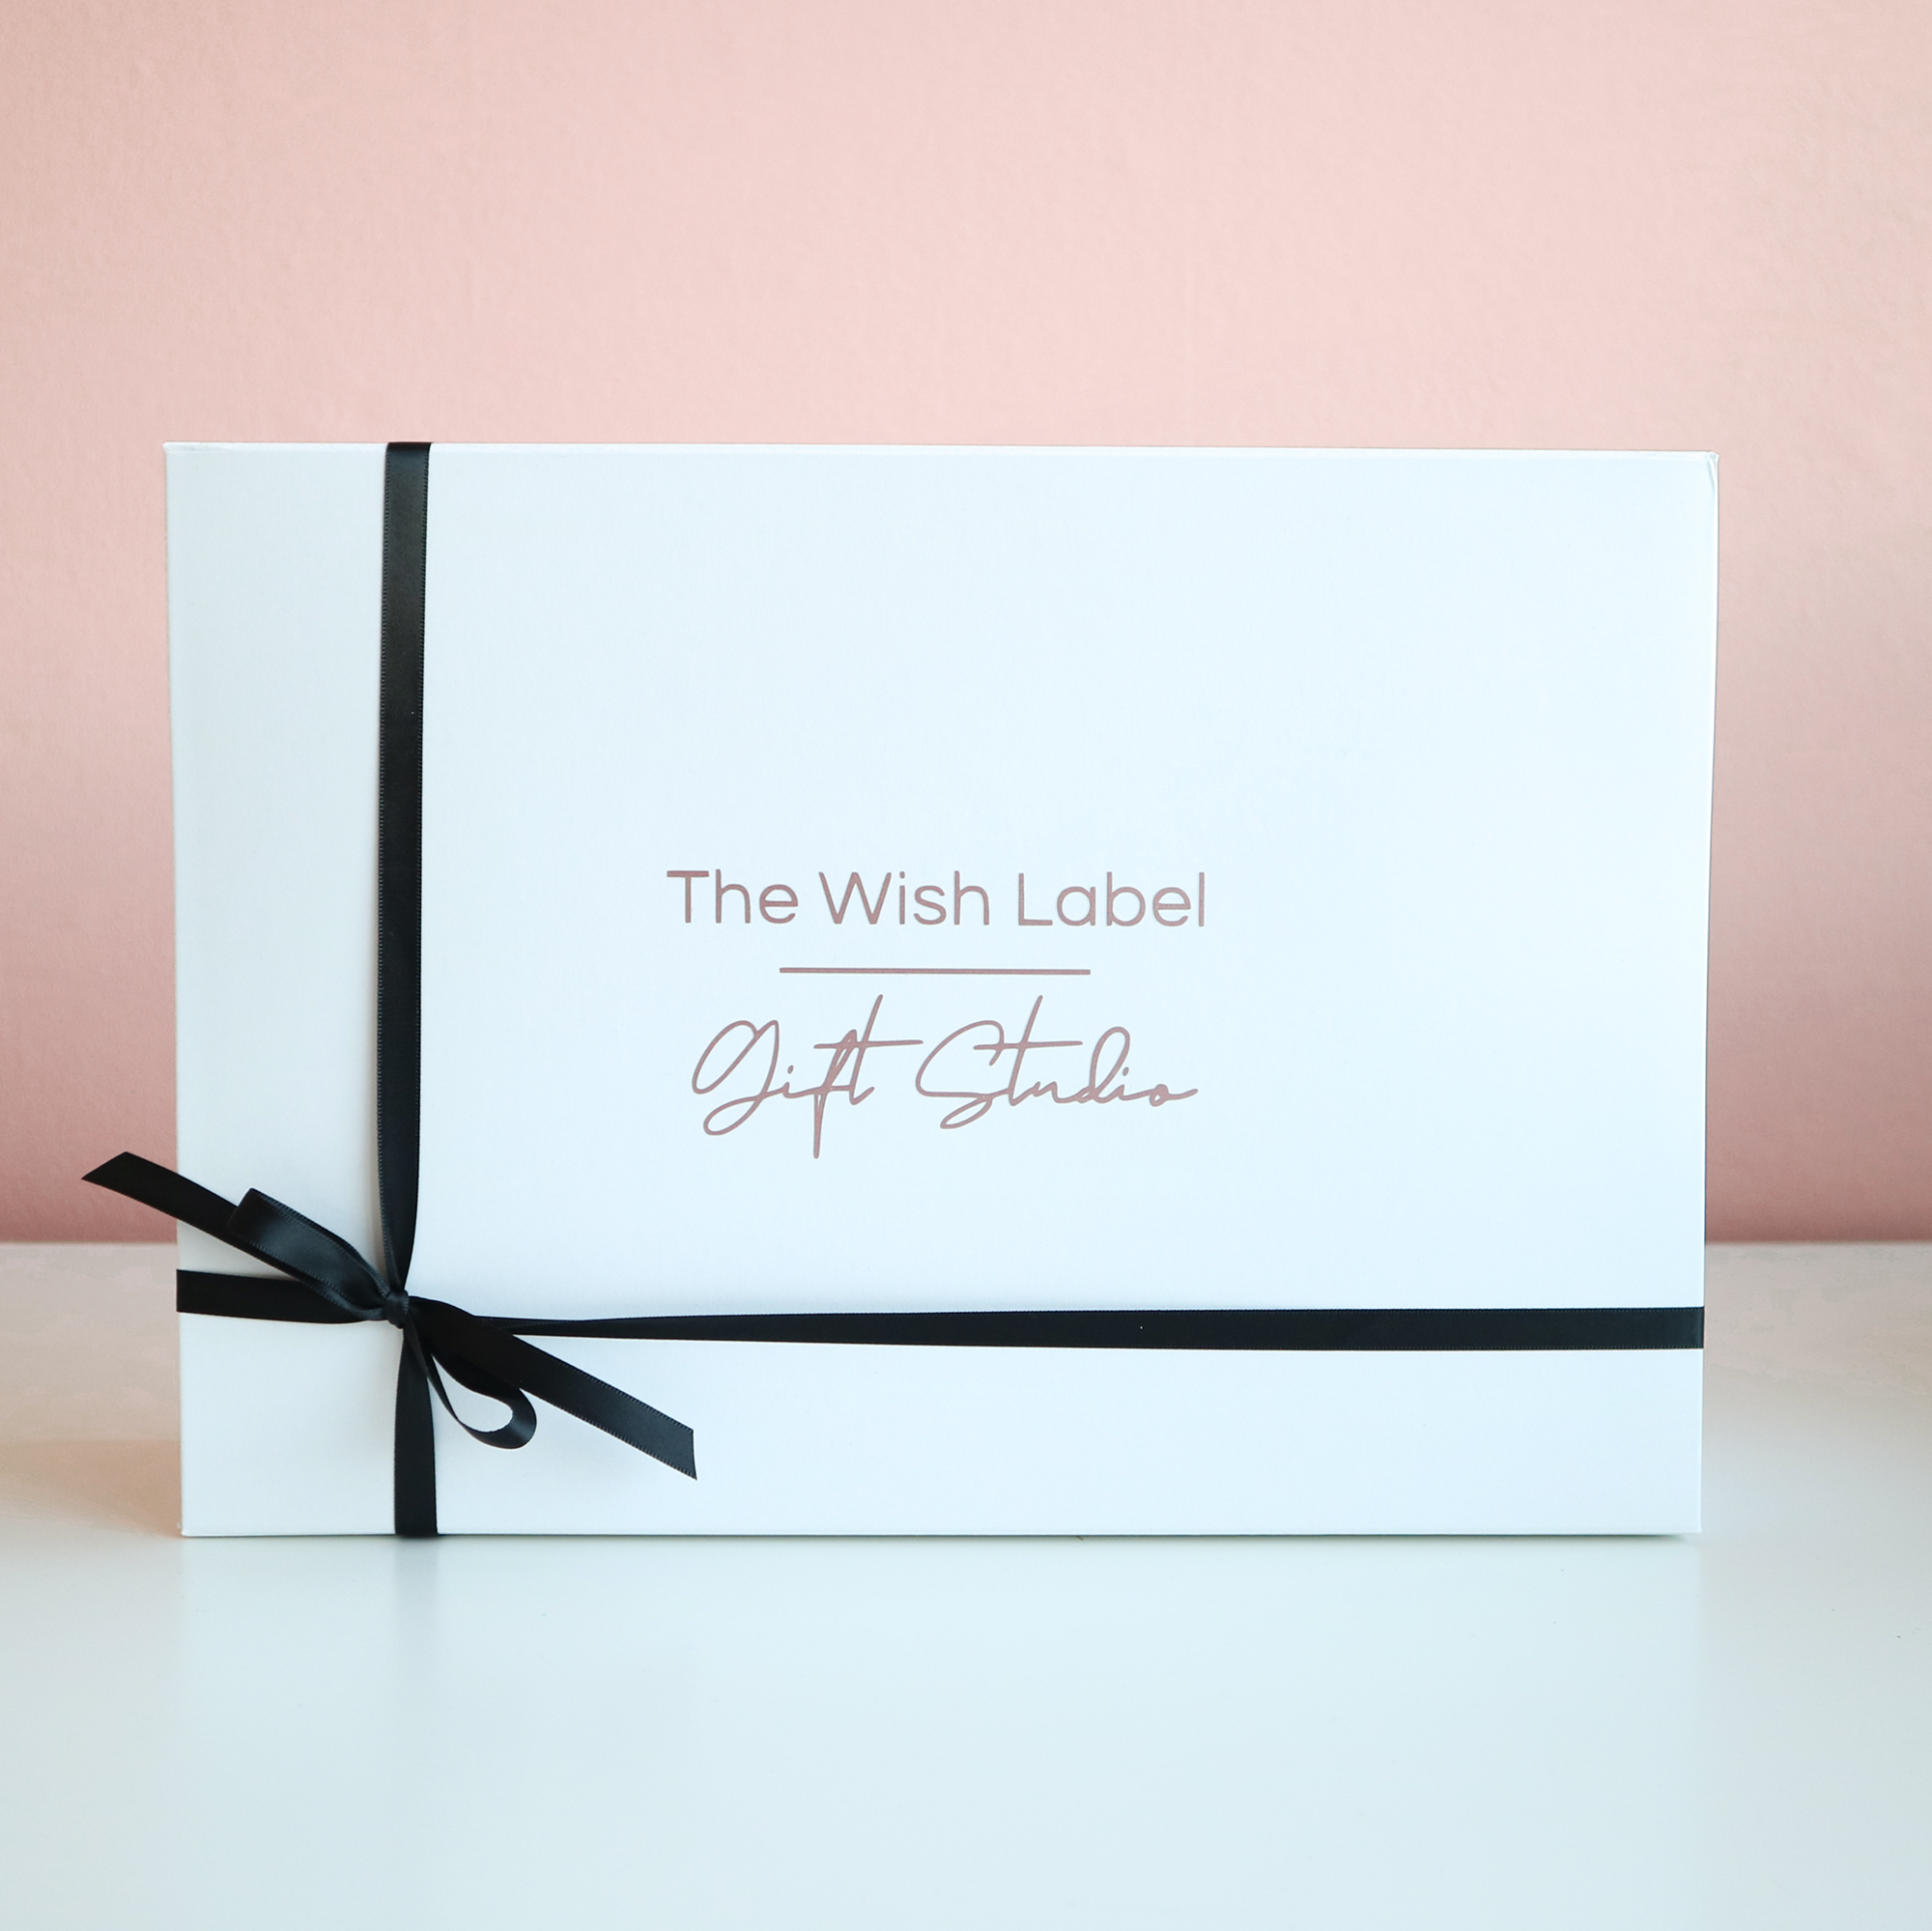 Naar behoren bericht Snoep Luxe cadeaupakket voor vrouw? Stel jouw eigen cadeaupakket samen!